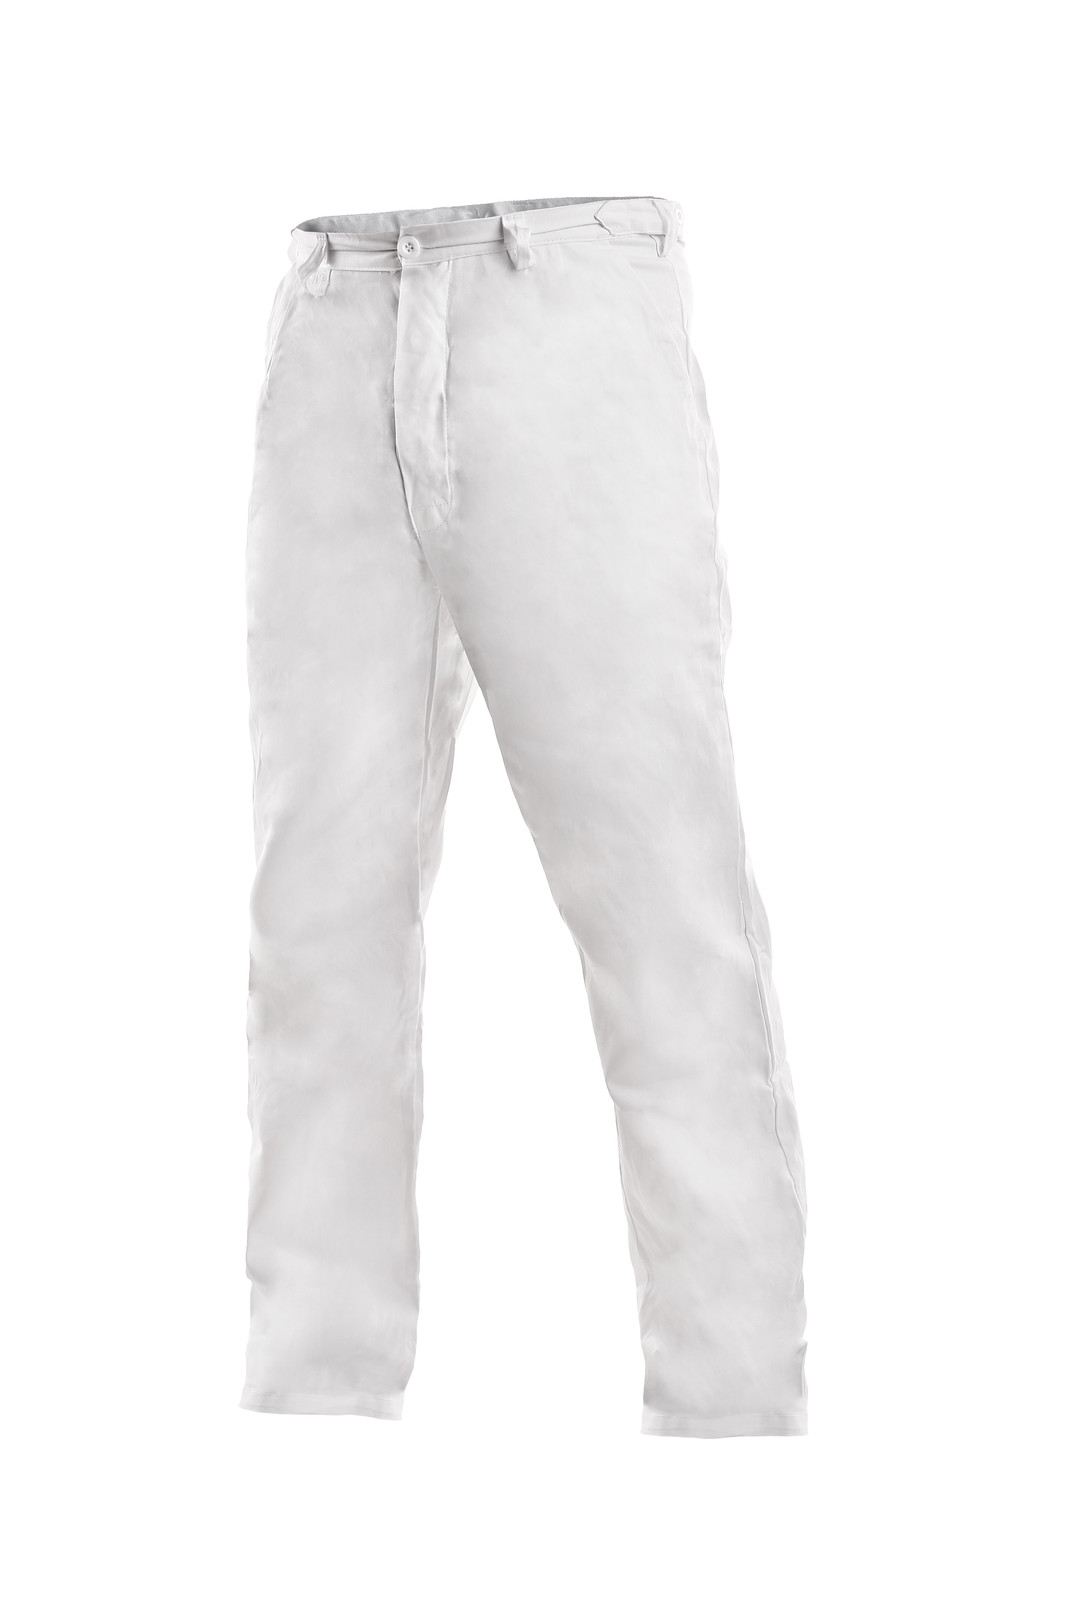 Pánske biele bavlnené nohavice Artur - veľkosť: 56, farba: biela